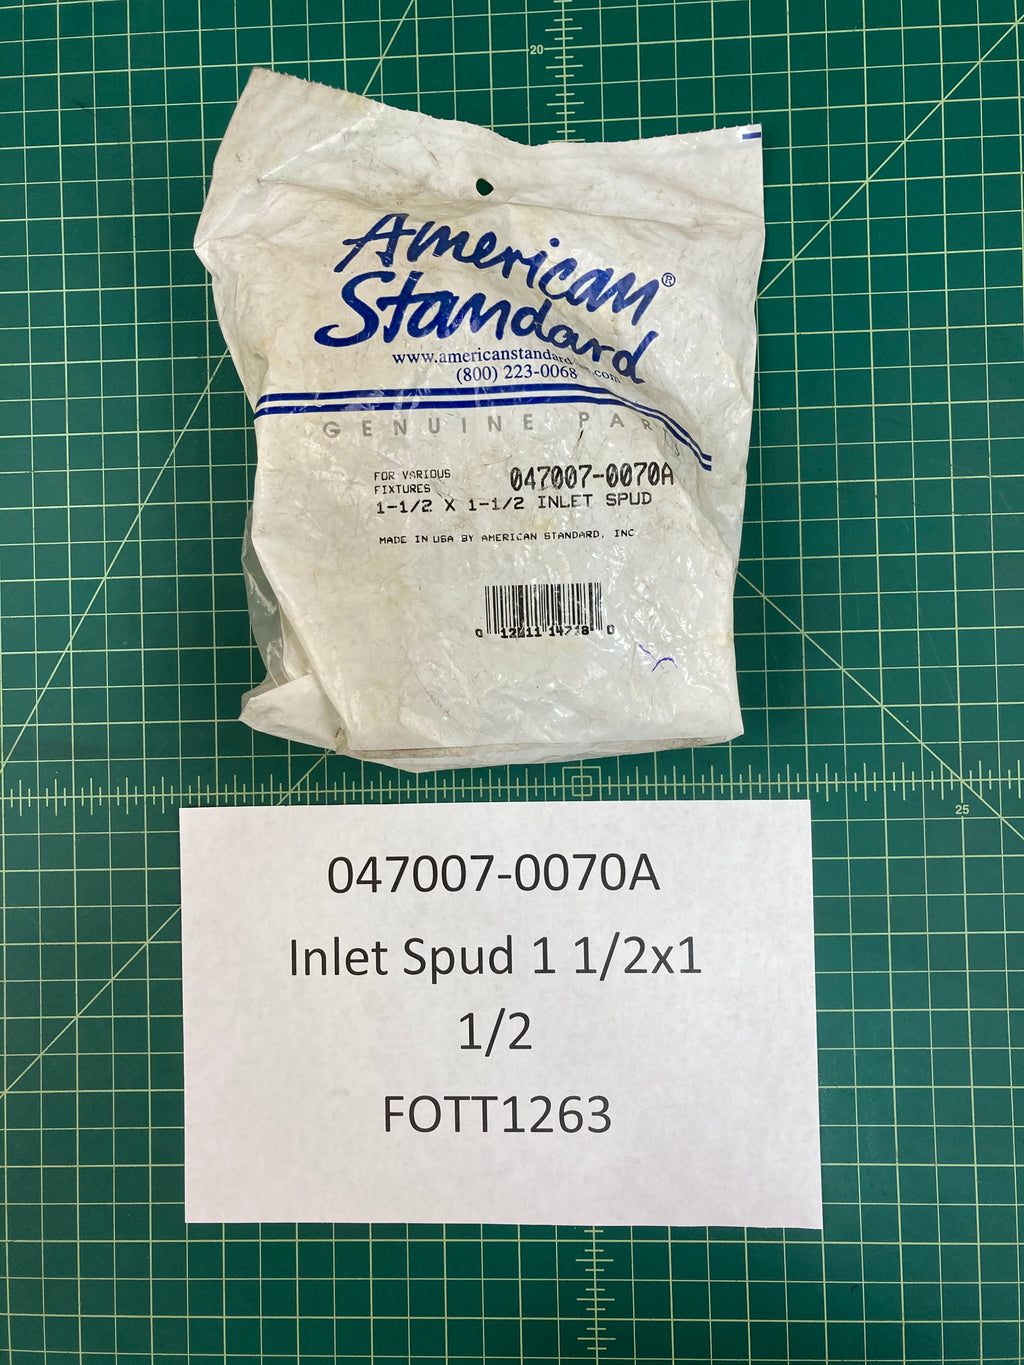 American Standard Inlet Spud 1 1/2x1 1/2